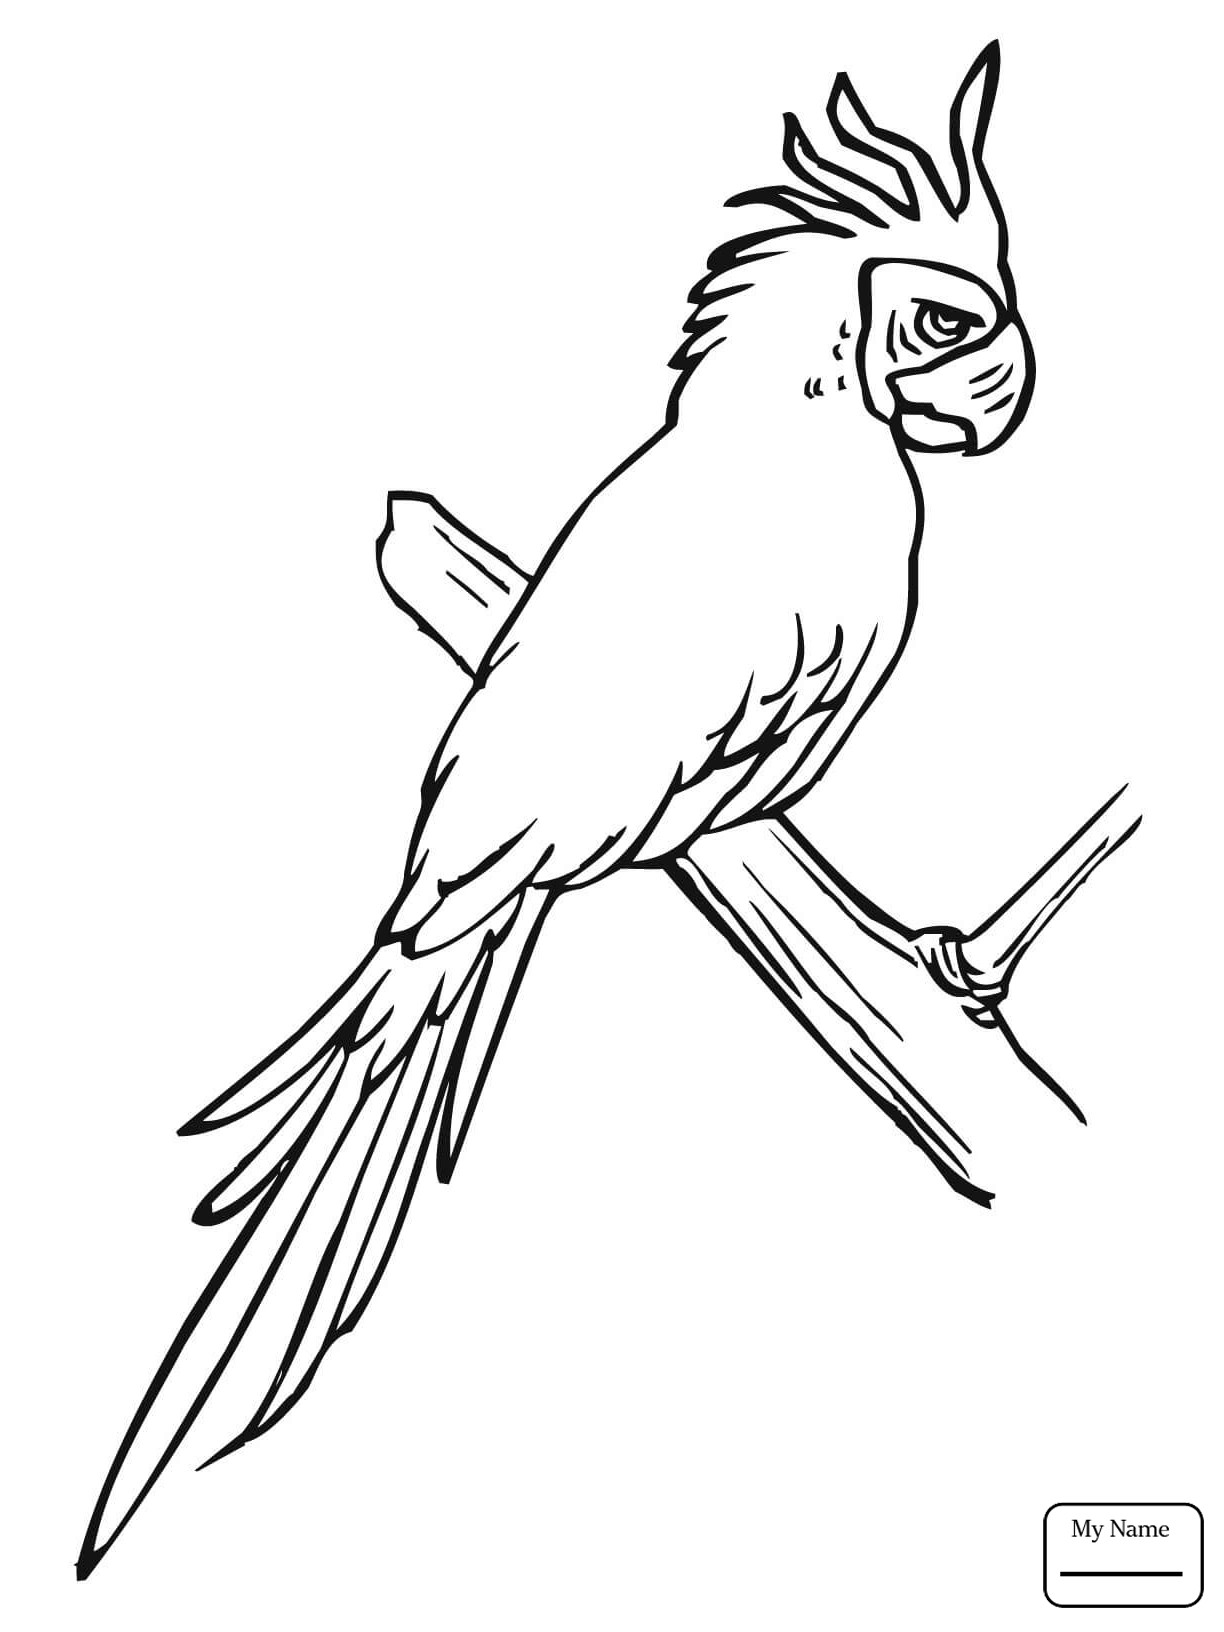 Раскраска попугай корелла